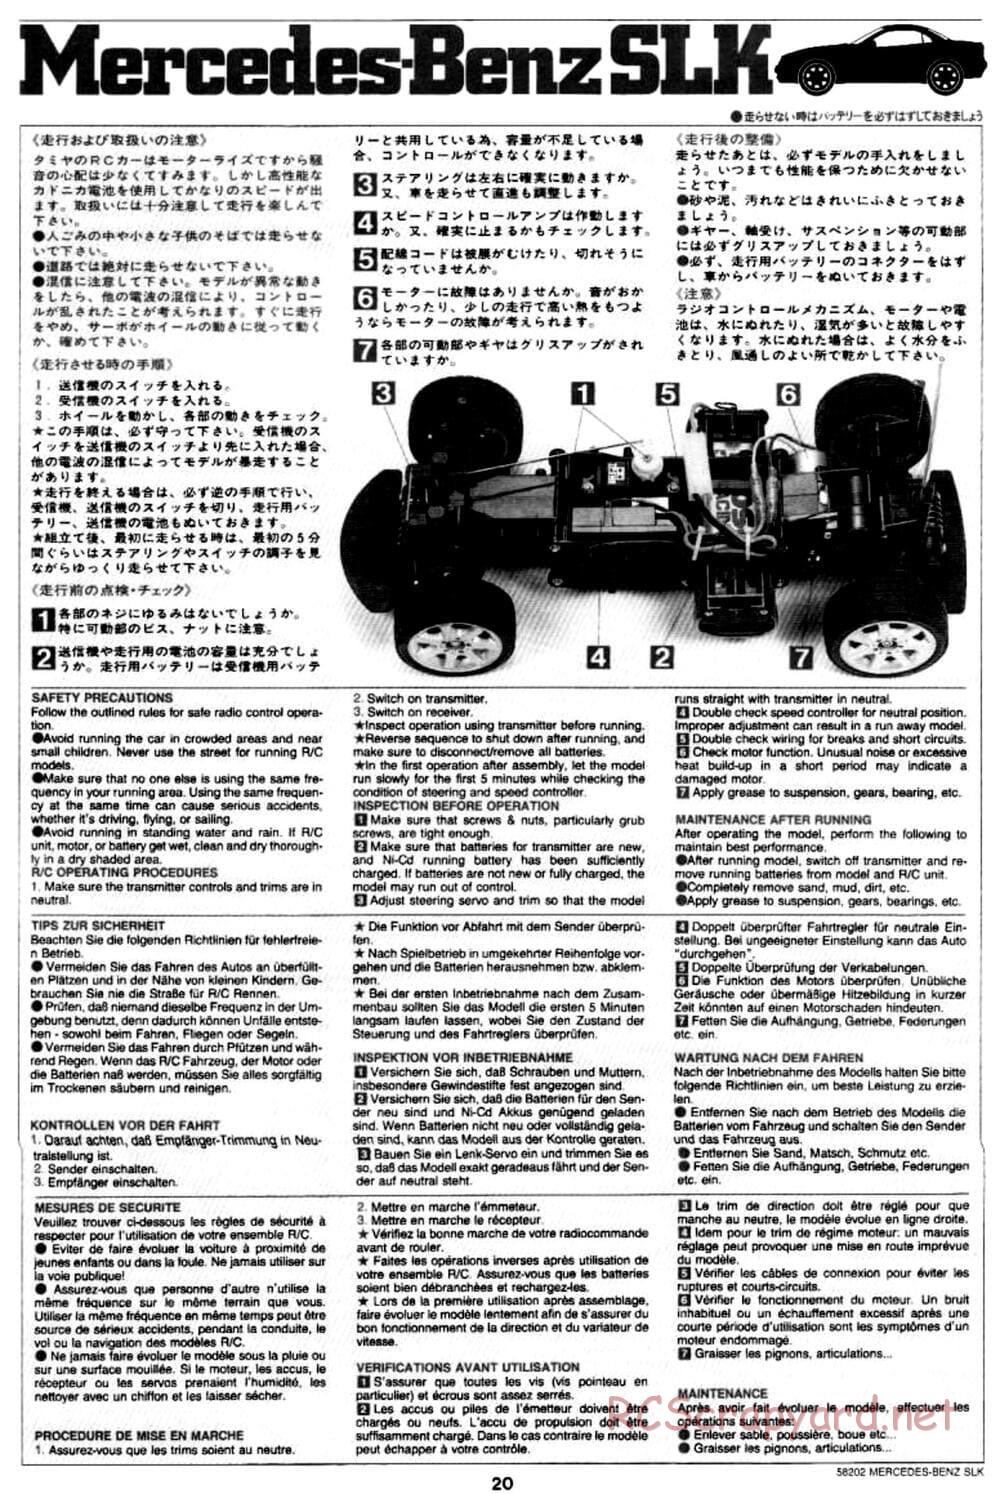 Tamiya - Mercedes-Benz SLK - M02L Chassis - Manual - Page 20